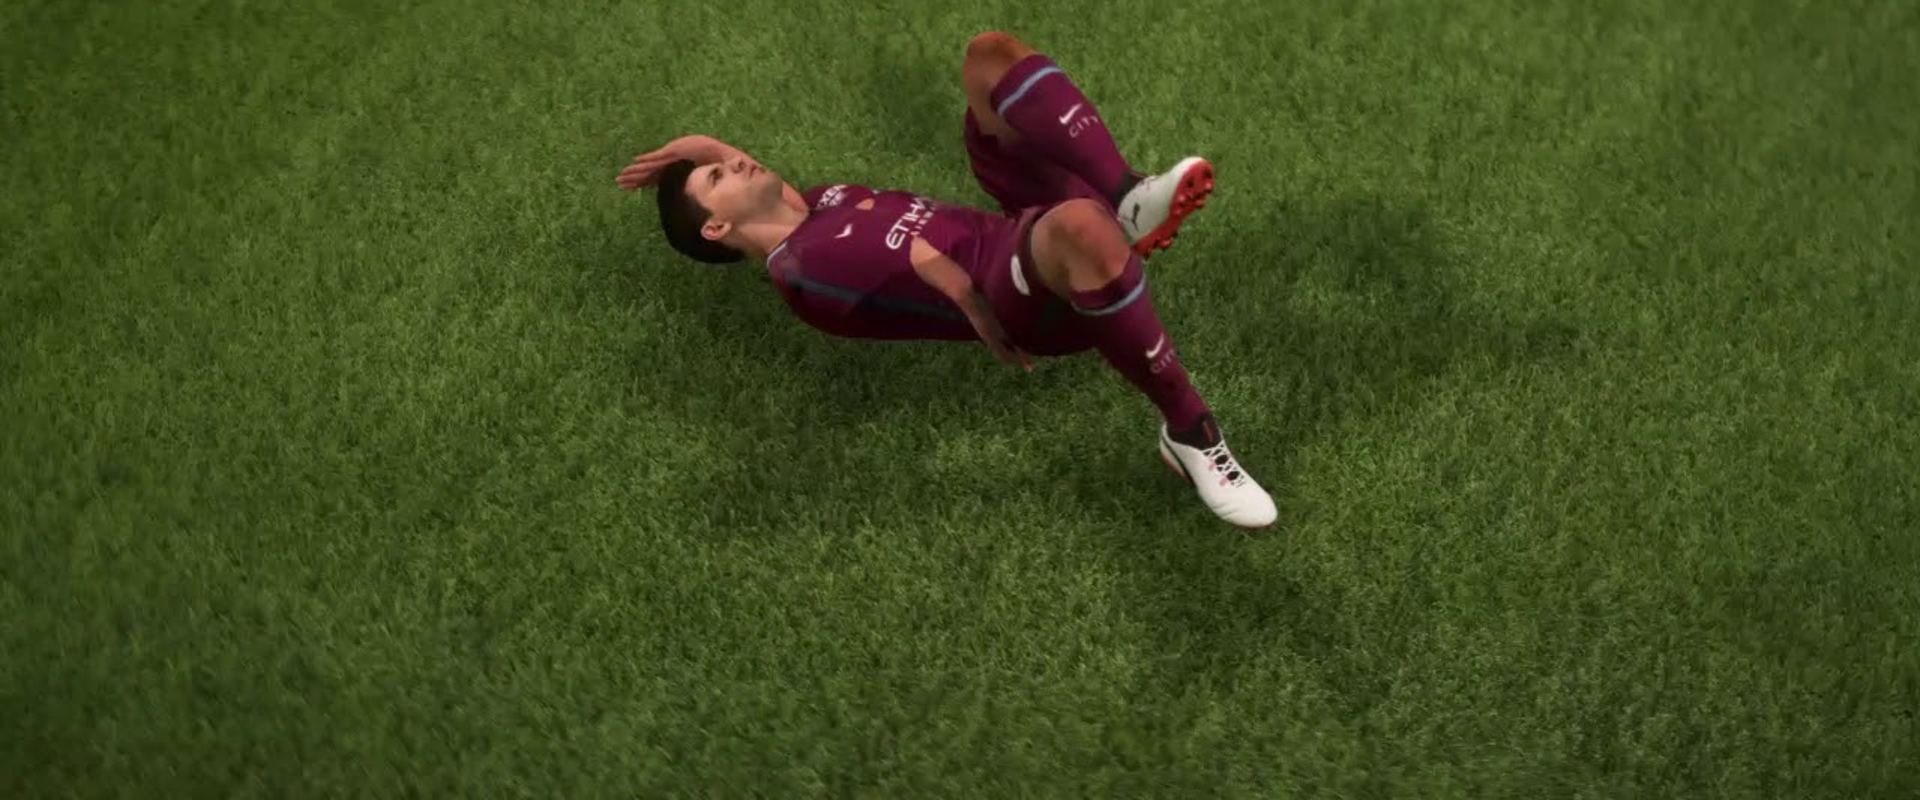 FIFA18: Mi történik, ha direkt sérülnek le a játékosok egymás után egy meccsen?